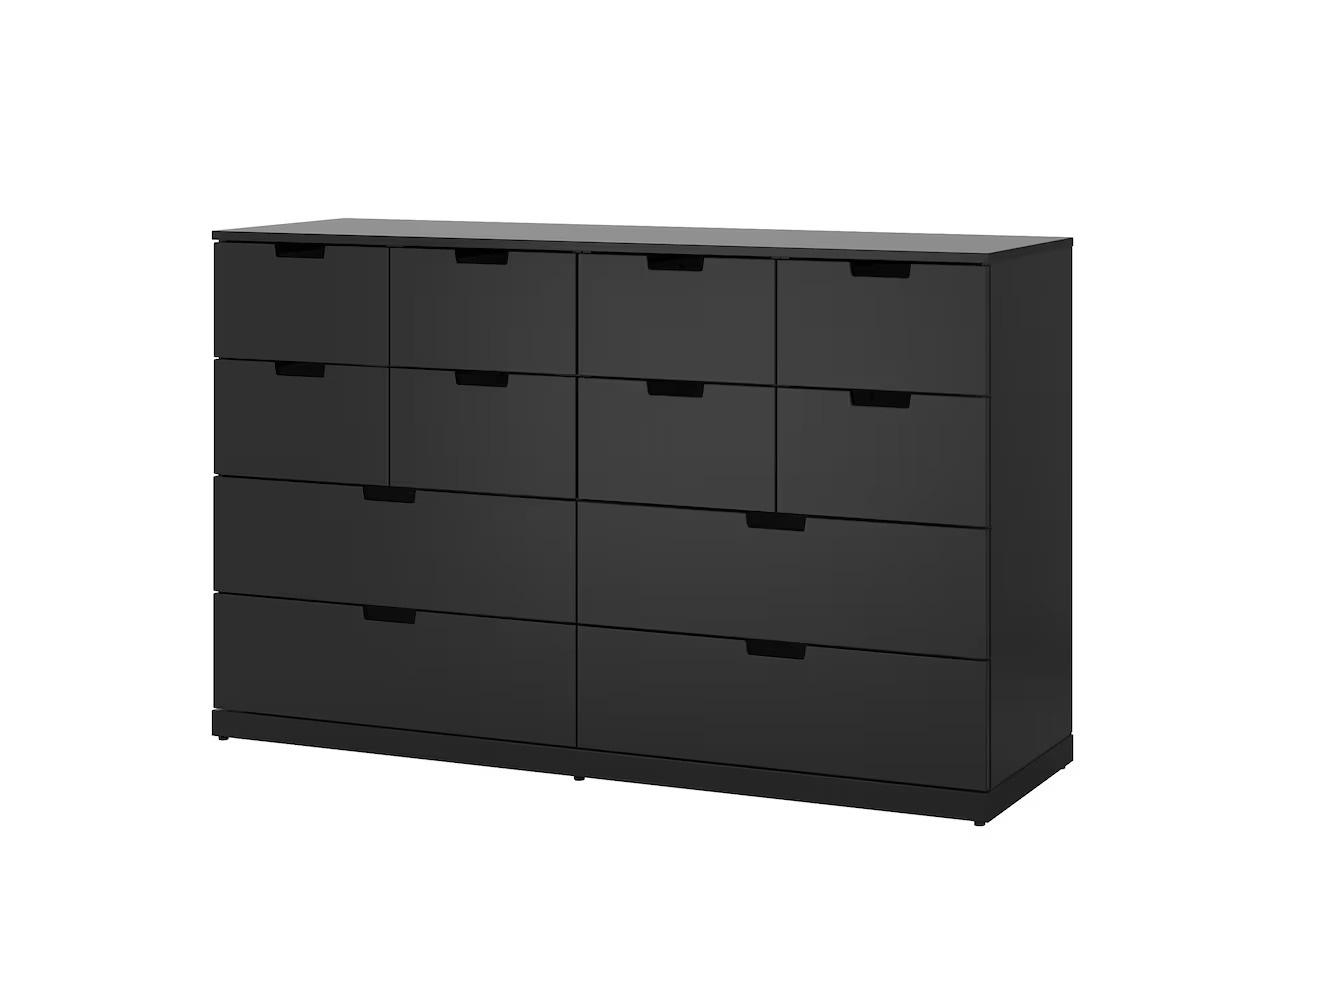 Комод Нордли 30 black ИКЕА (IKEA) изображение товара